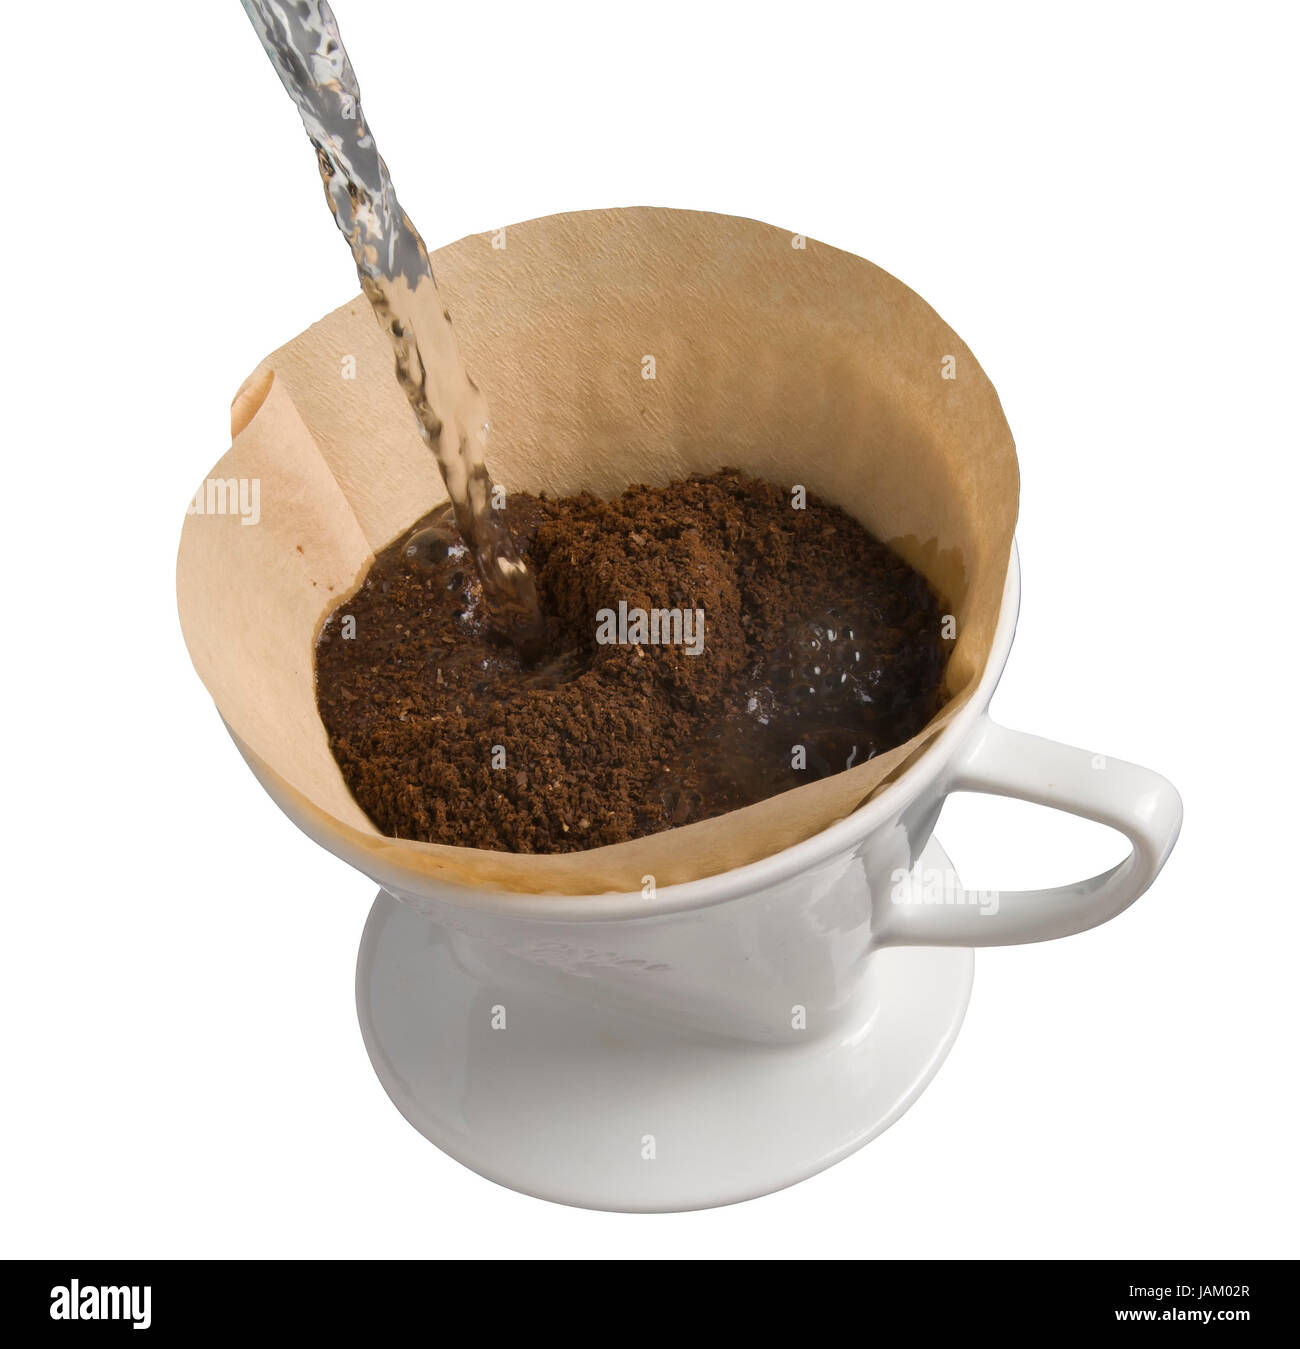 Kaffee wird im klassichen Porzellanfilter gekocht, Kaffeepuler in  ungebleichtem Papierfilter wird mit kochendem Wasser aufgebrüht vor weißem  Hintergrund Stock Photo - Alamy